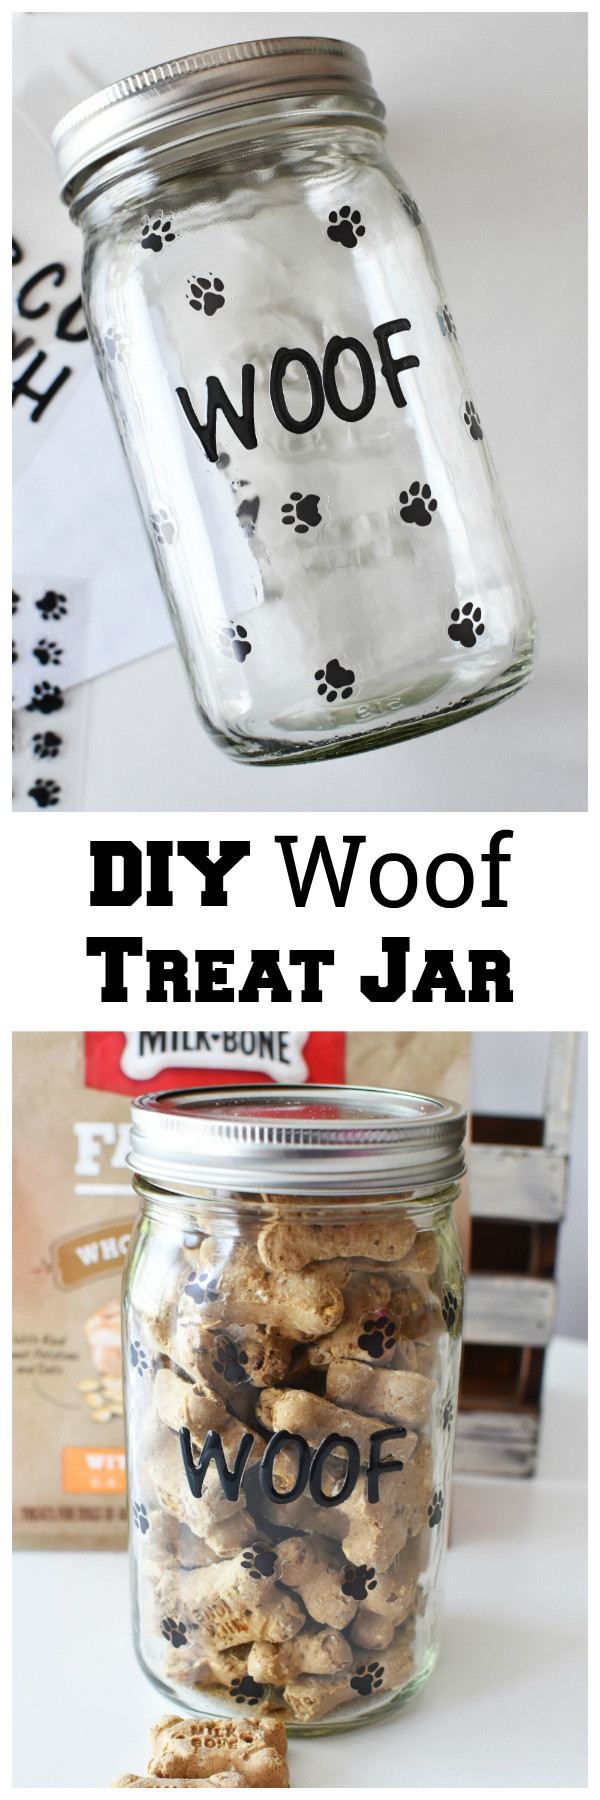 DIY Dog Treat Jar
 DIY Woof Dog Treat Jar